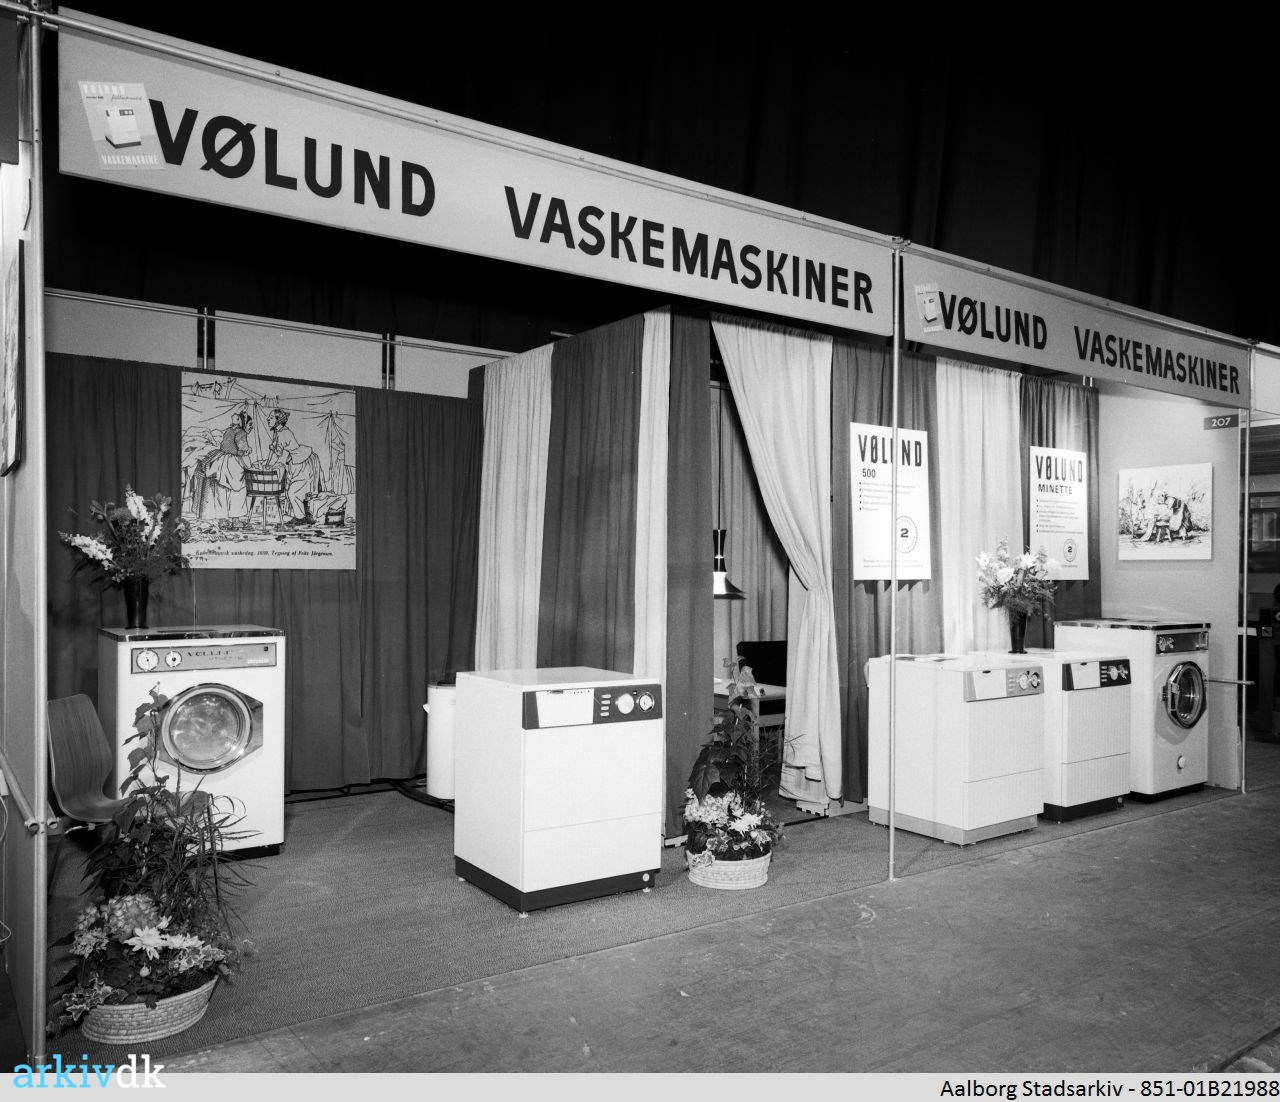 nåde Høne han arkiv.dk | Scanfair udstilling i Aalborghallen, Vølund Vaskemaskiner 1965